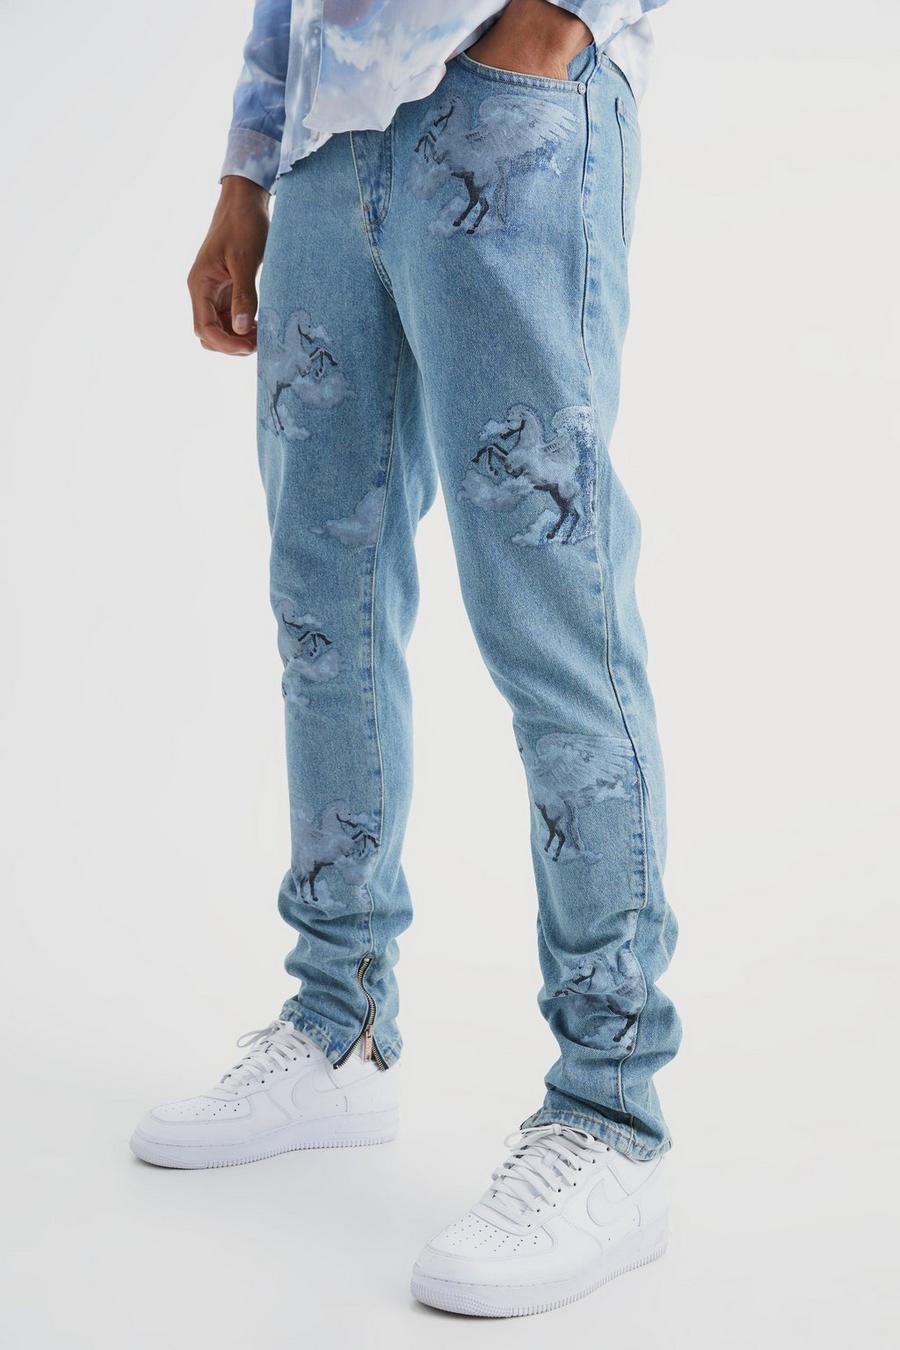 Jeans Tall Slim Fit in denim rigido con grafica all over e inserti, Antique wash image number 1